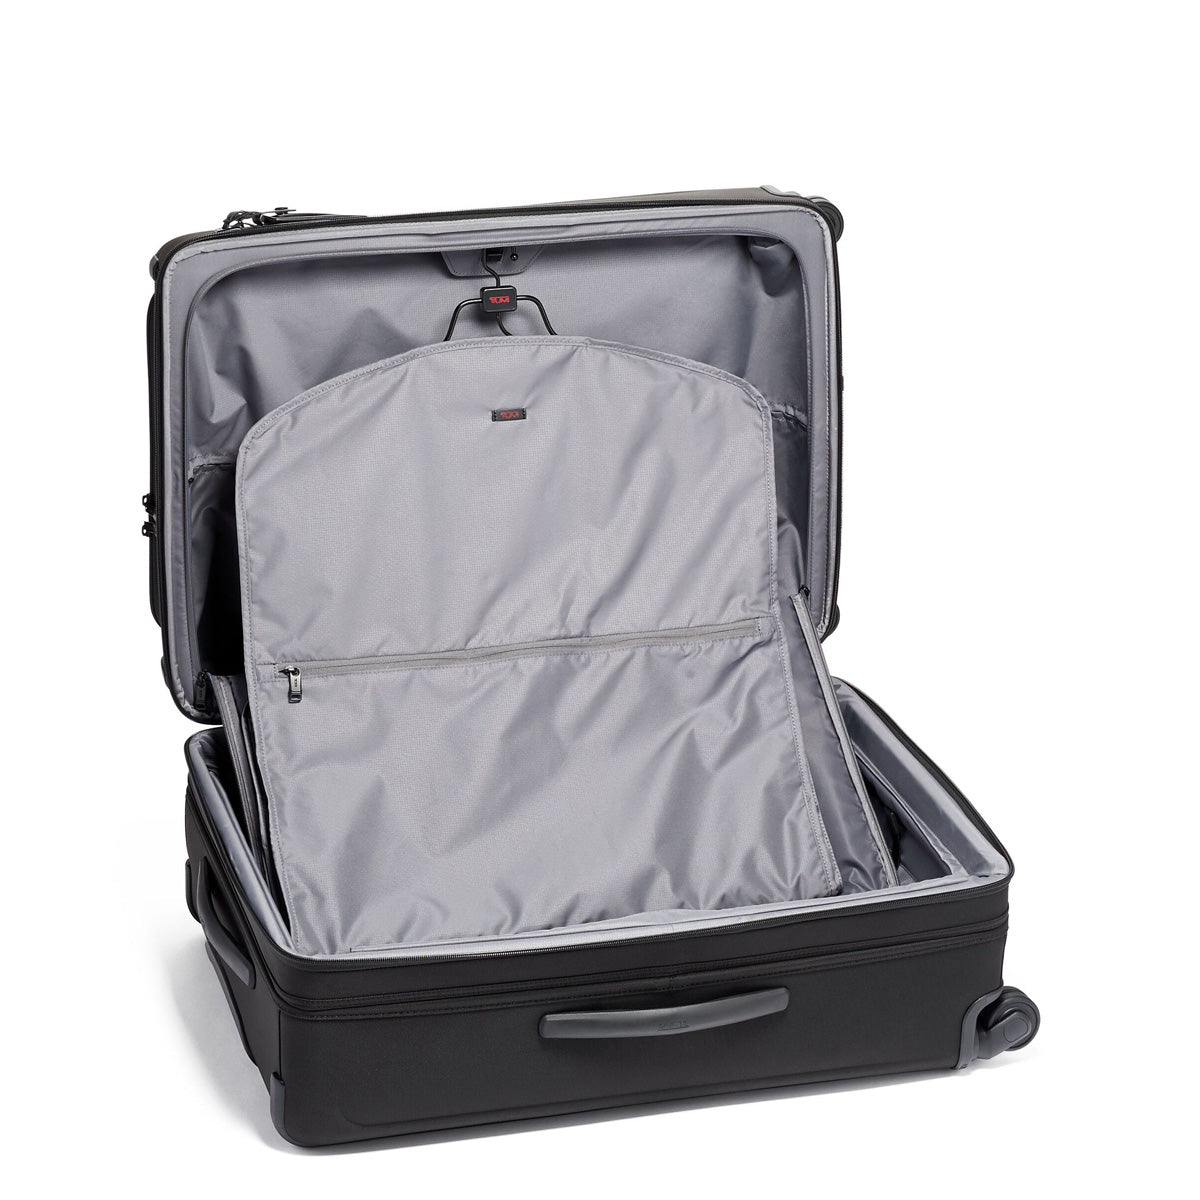 Tumi Alpha Medium Trip Expandable Packing Case - Black